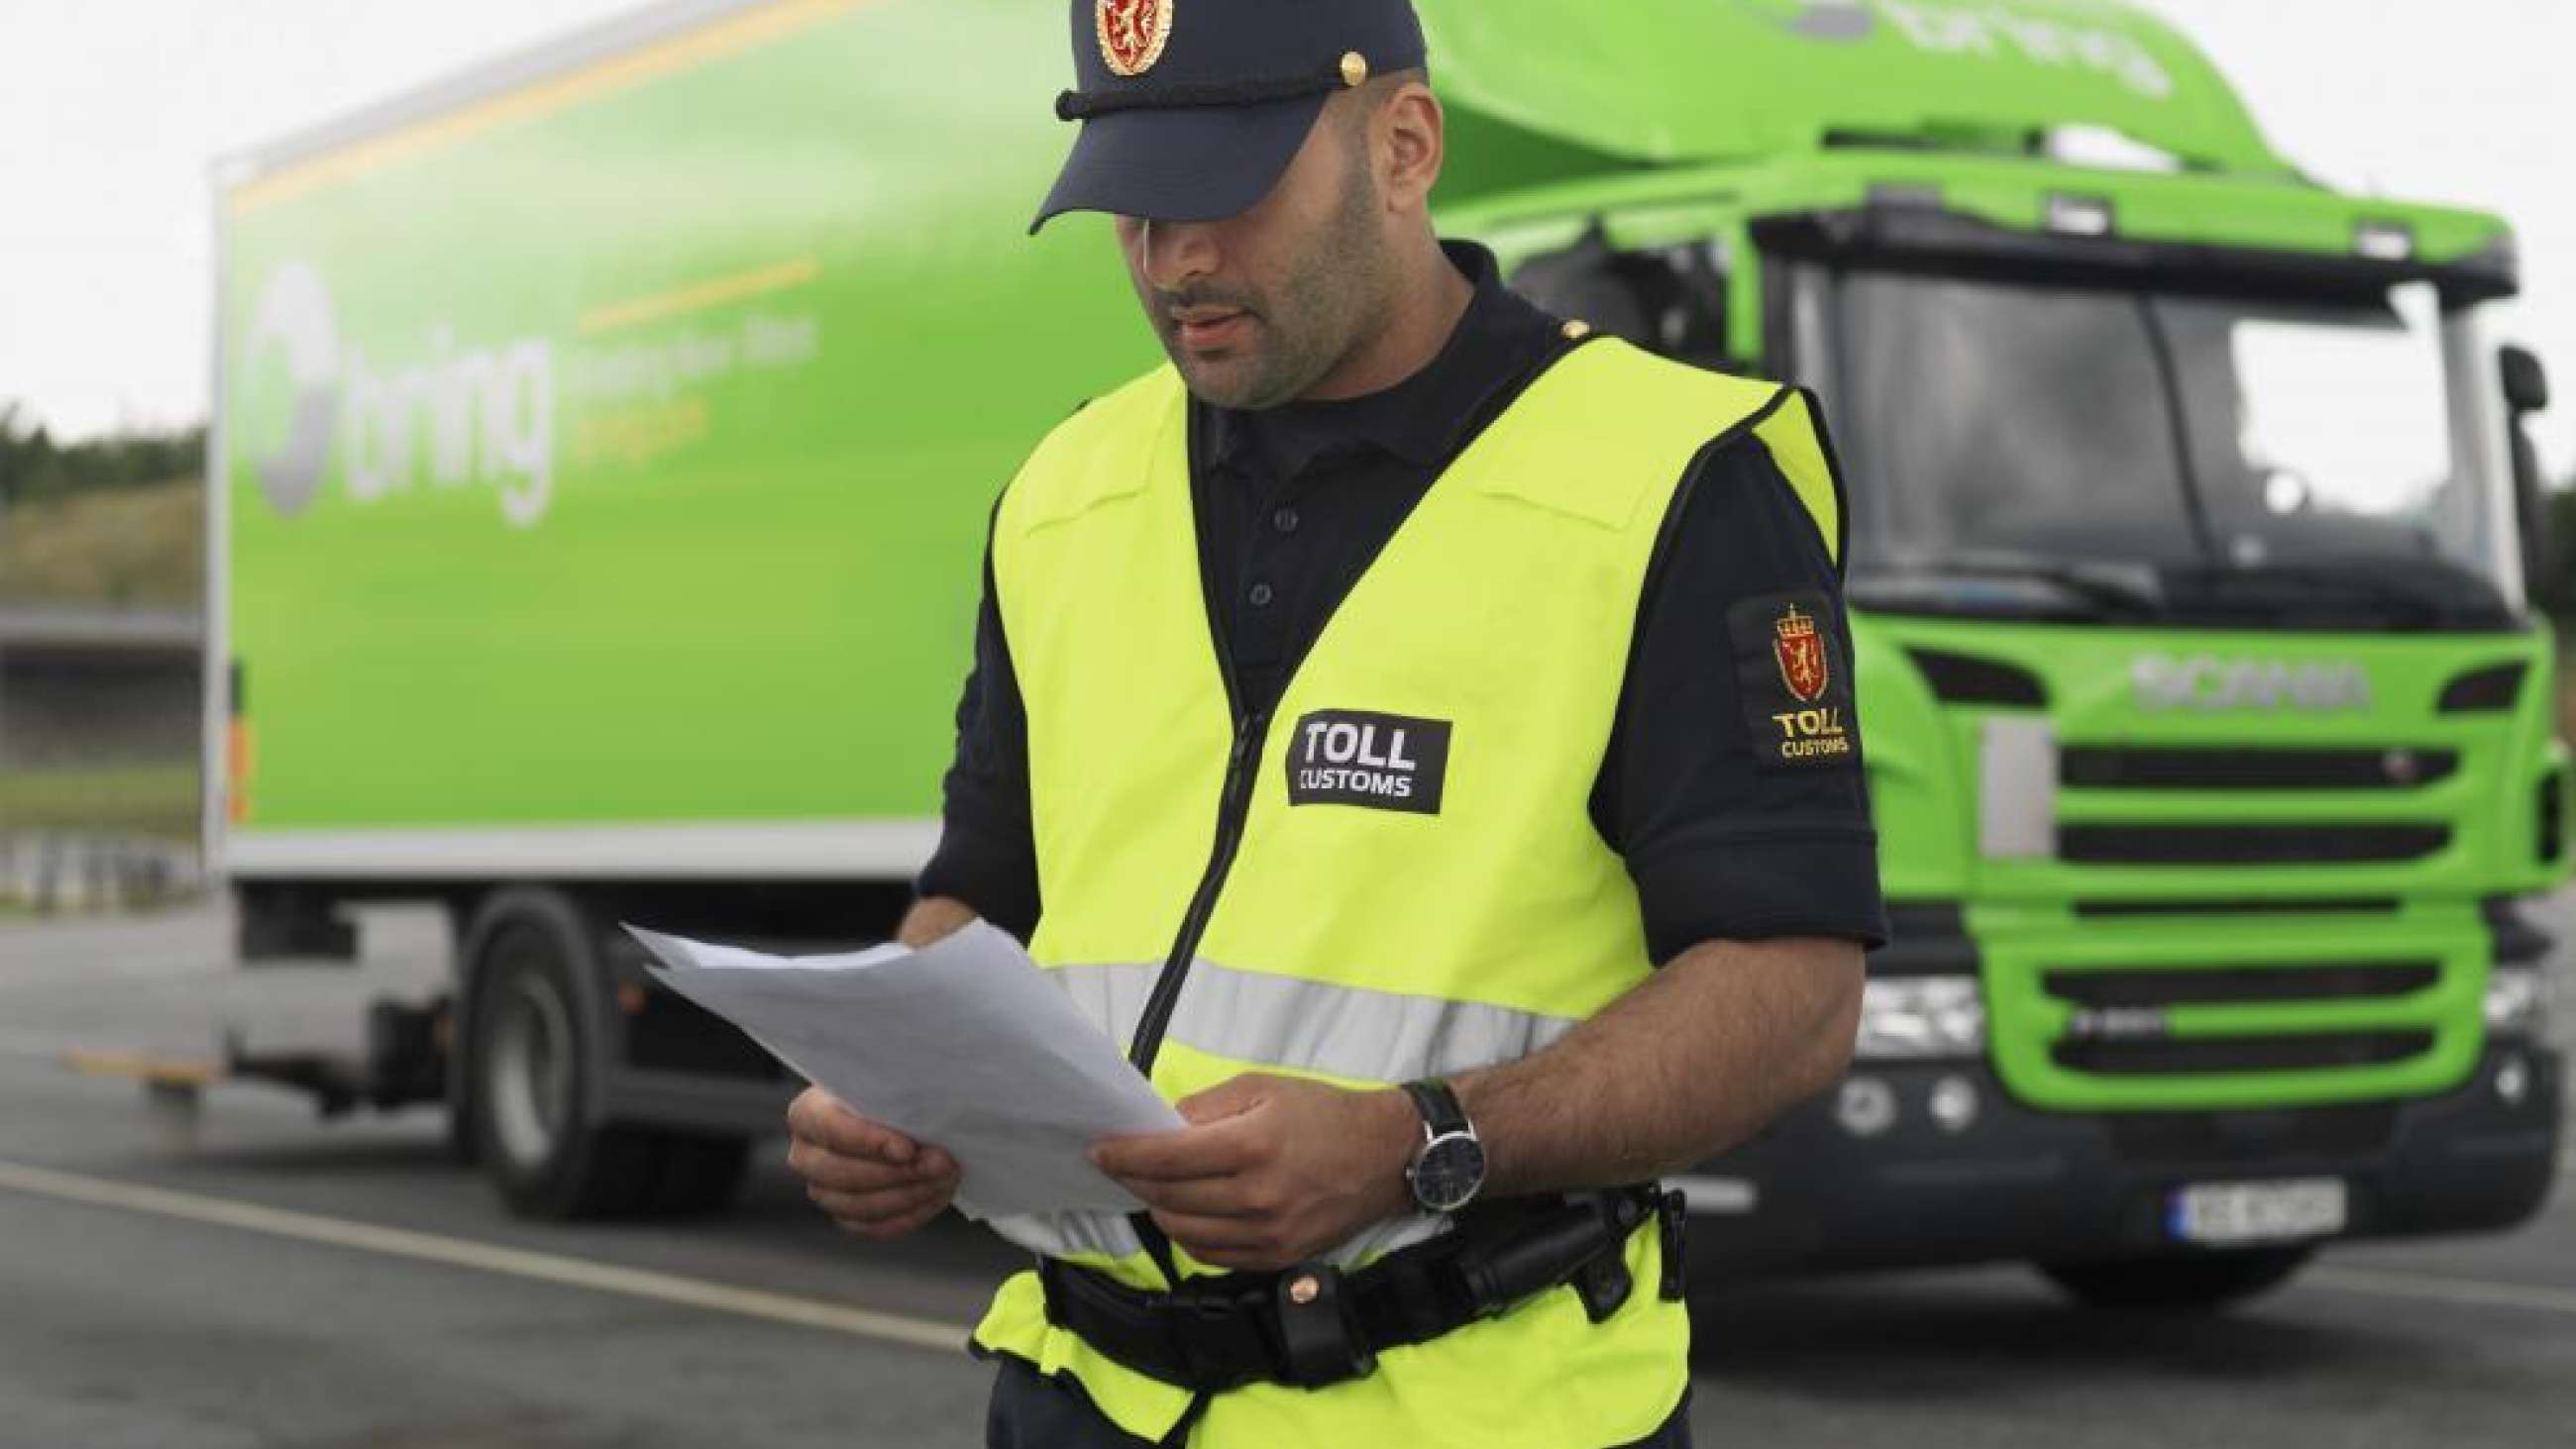 En tulltjänsteman läser igenom dokument framför en Bring lastbil.